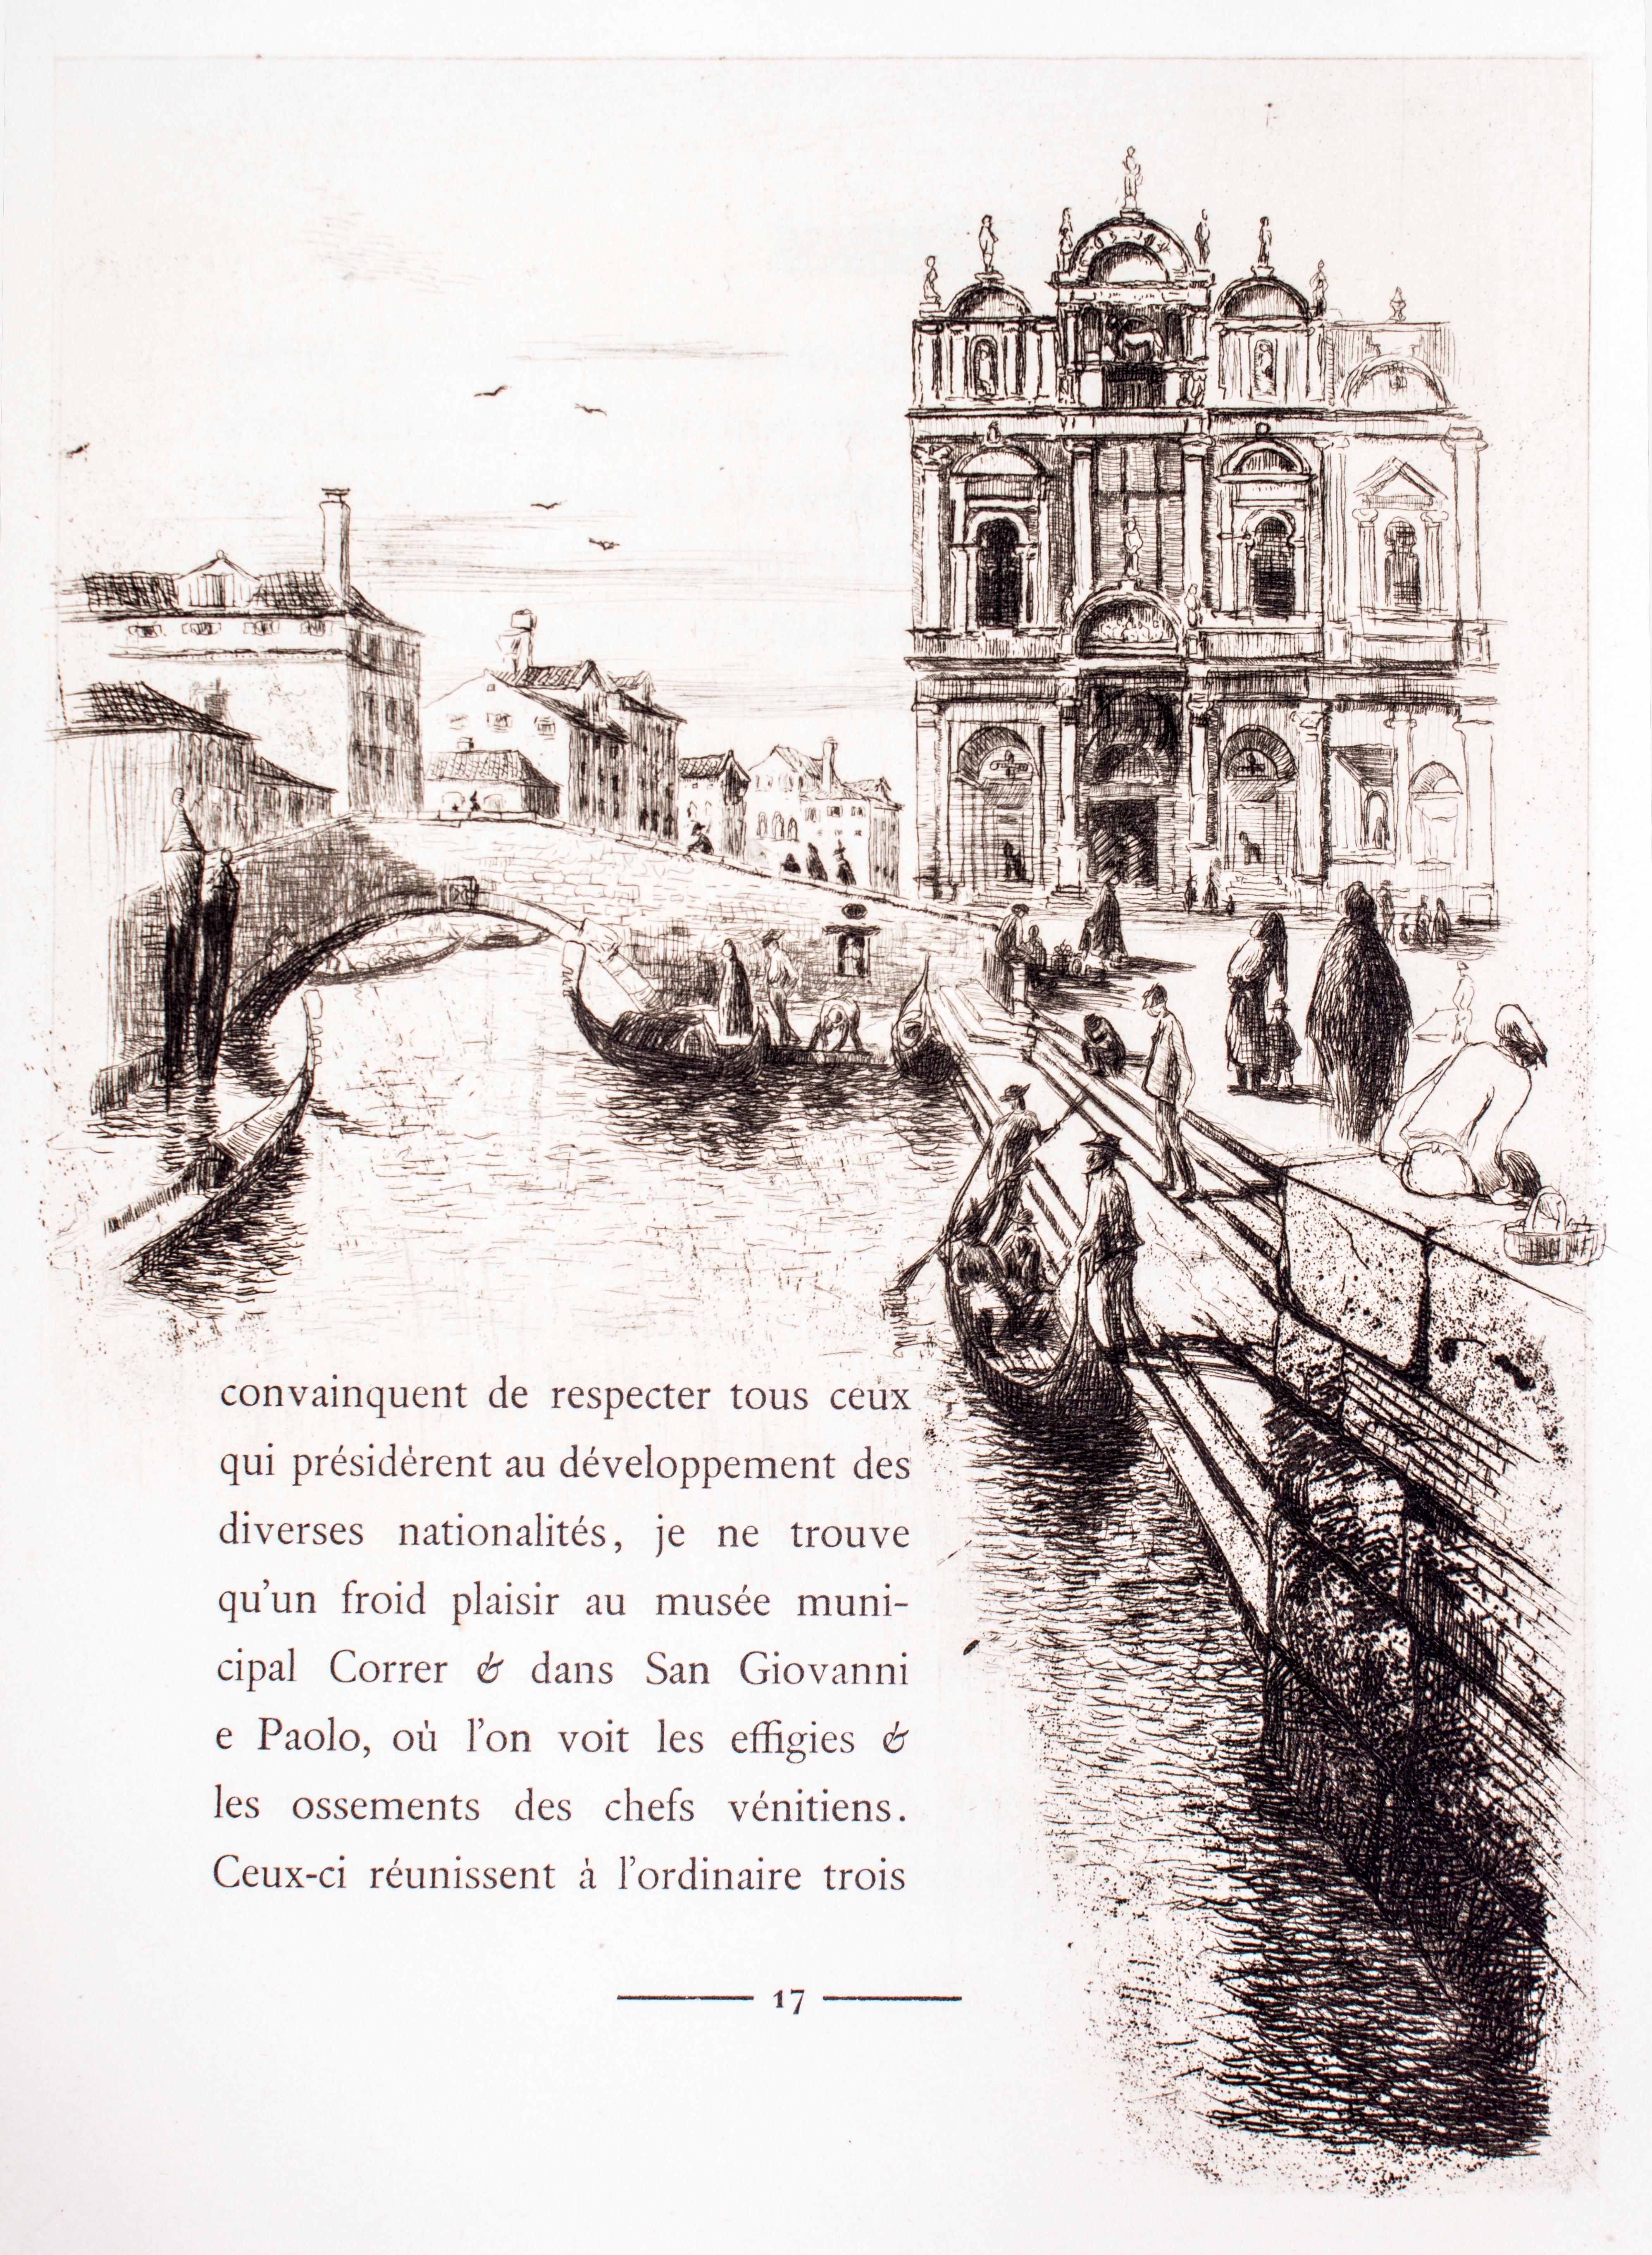 La Mort de Venise - Rare Book illustrated by G. Le Meilleur - 1920 For Sale 2